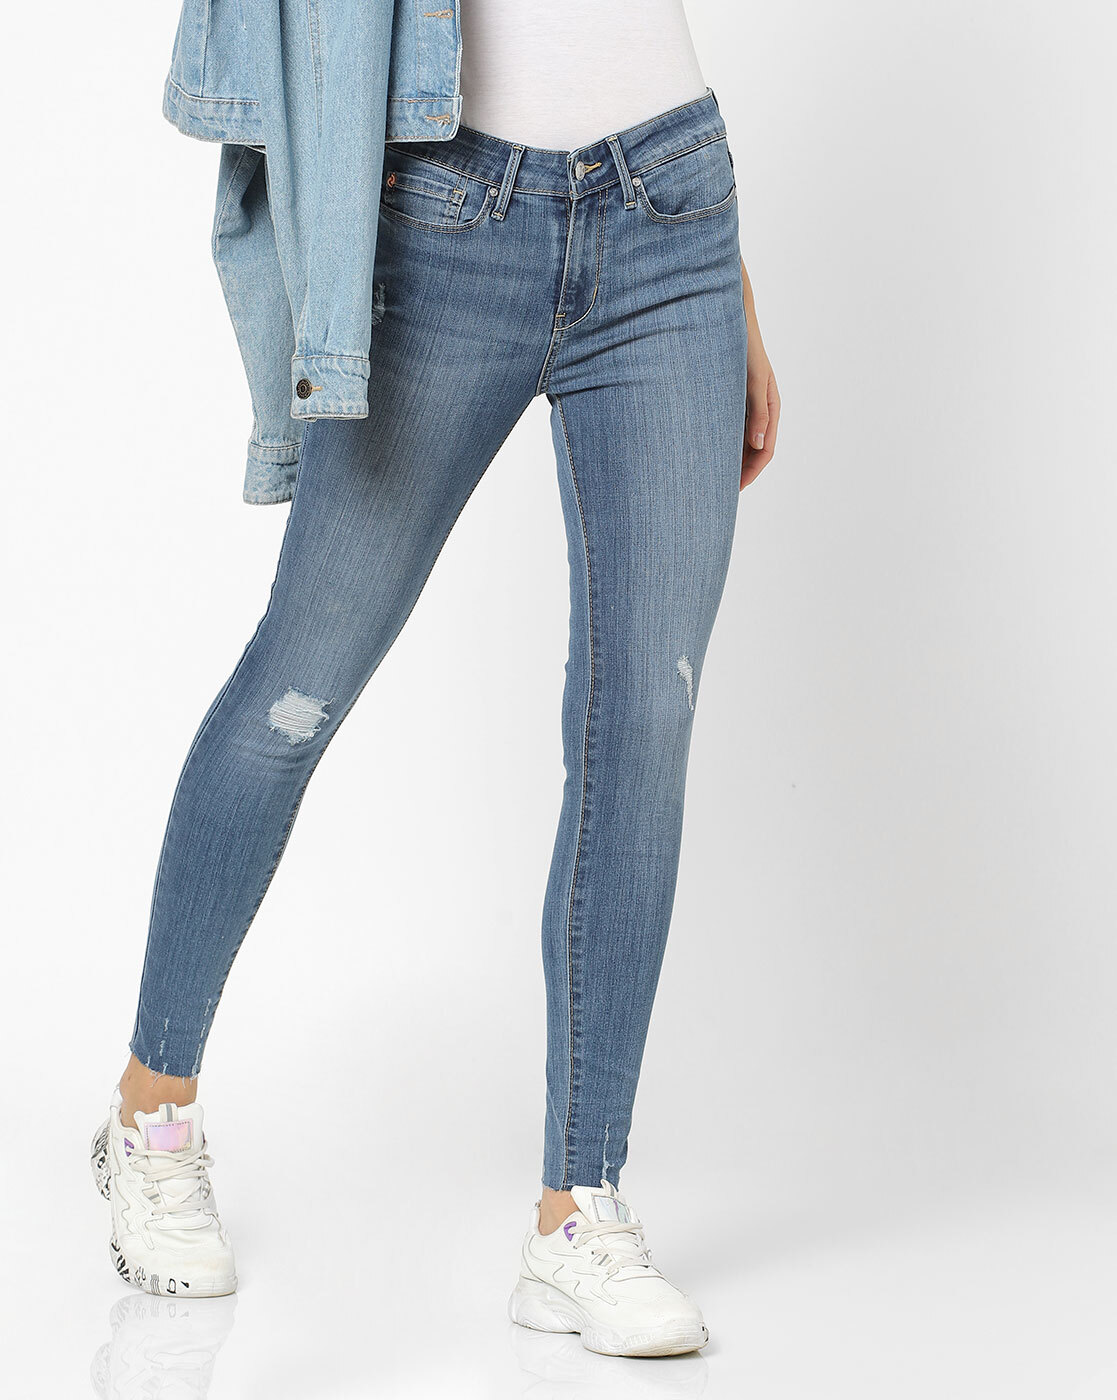 Buy Blue Jeans & Jeggings for Women by DENIZEN FROM LEVIS Online 